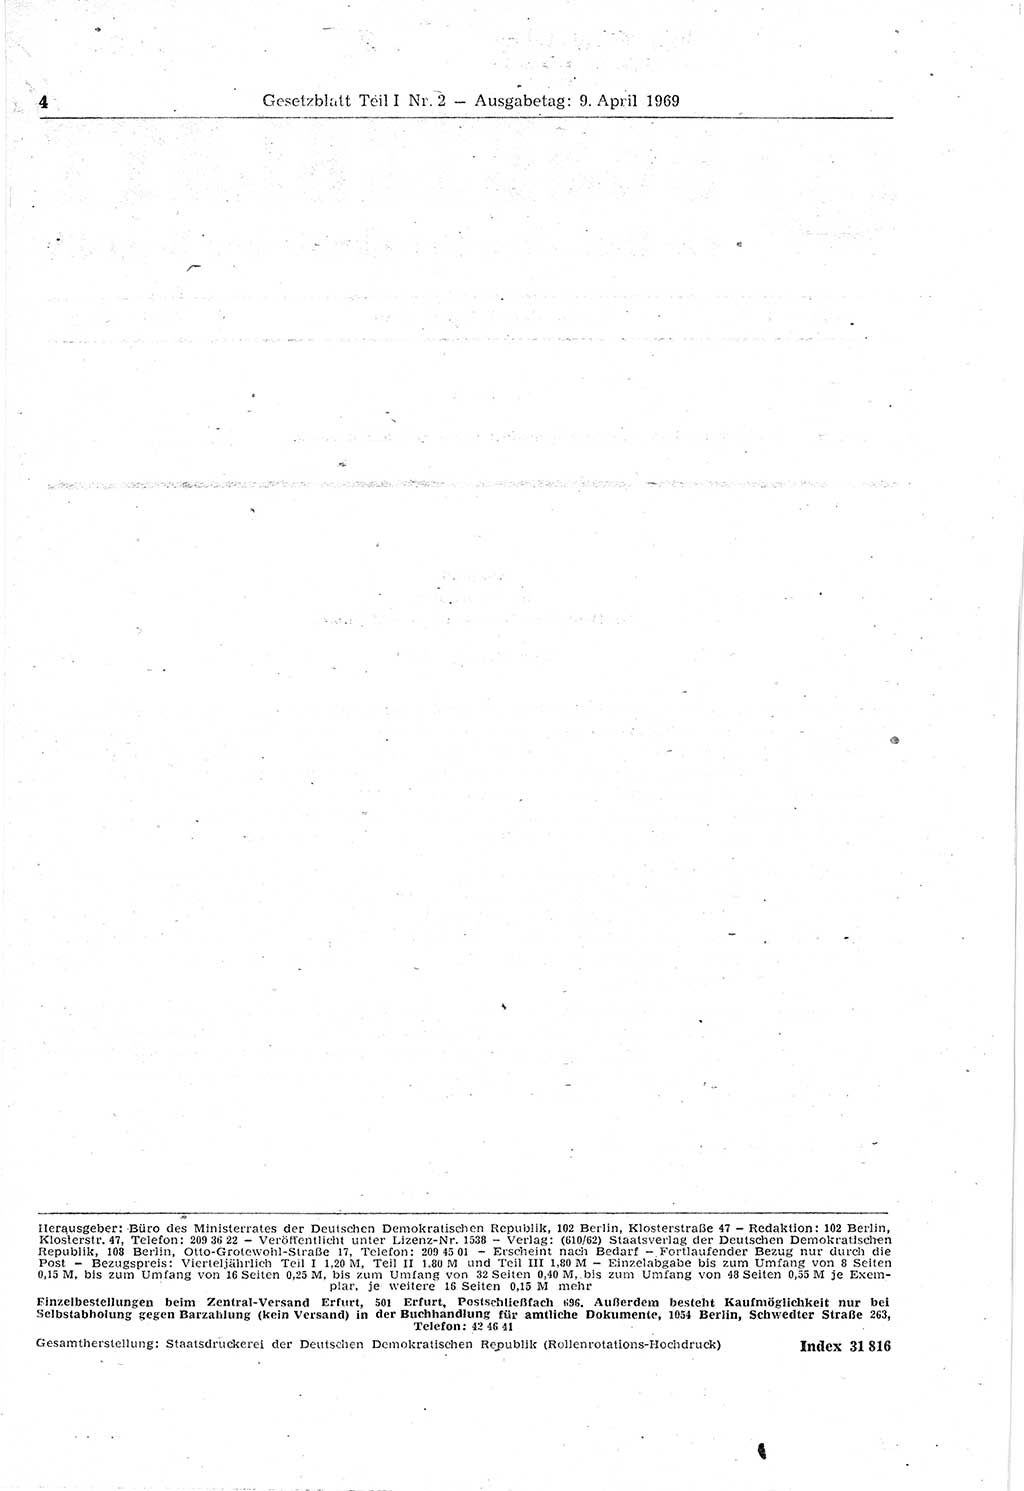 Gesetzblatt (GBl.) der Deutschen Demokratischen Republik (DDR) Teil Ⅰ 1969, Seite 4 (GBl. DDR Ⅰ 1969, S. 4)